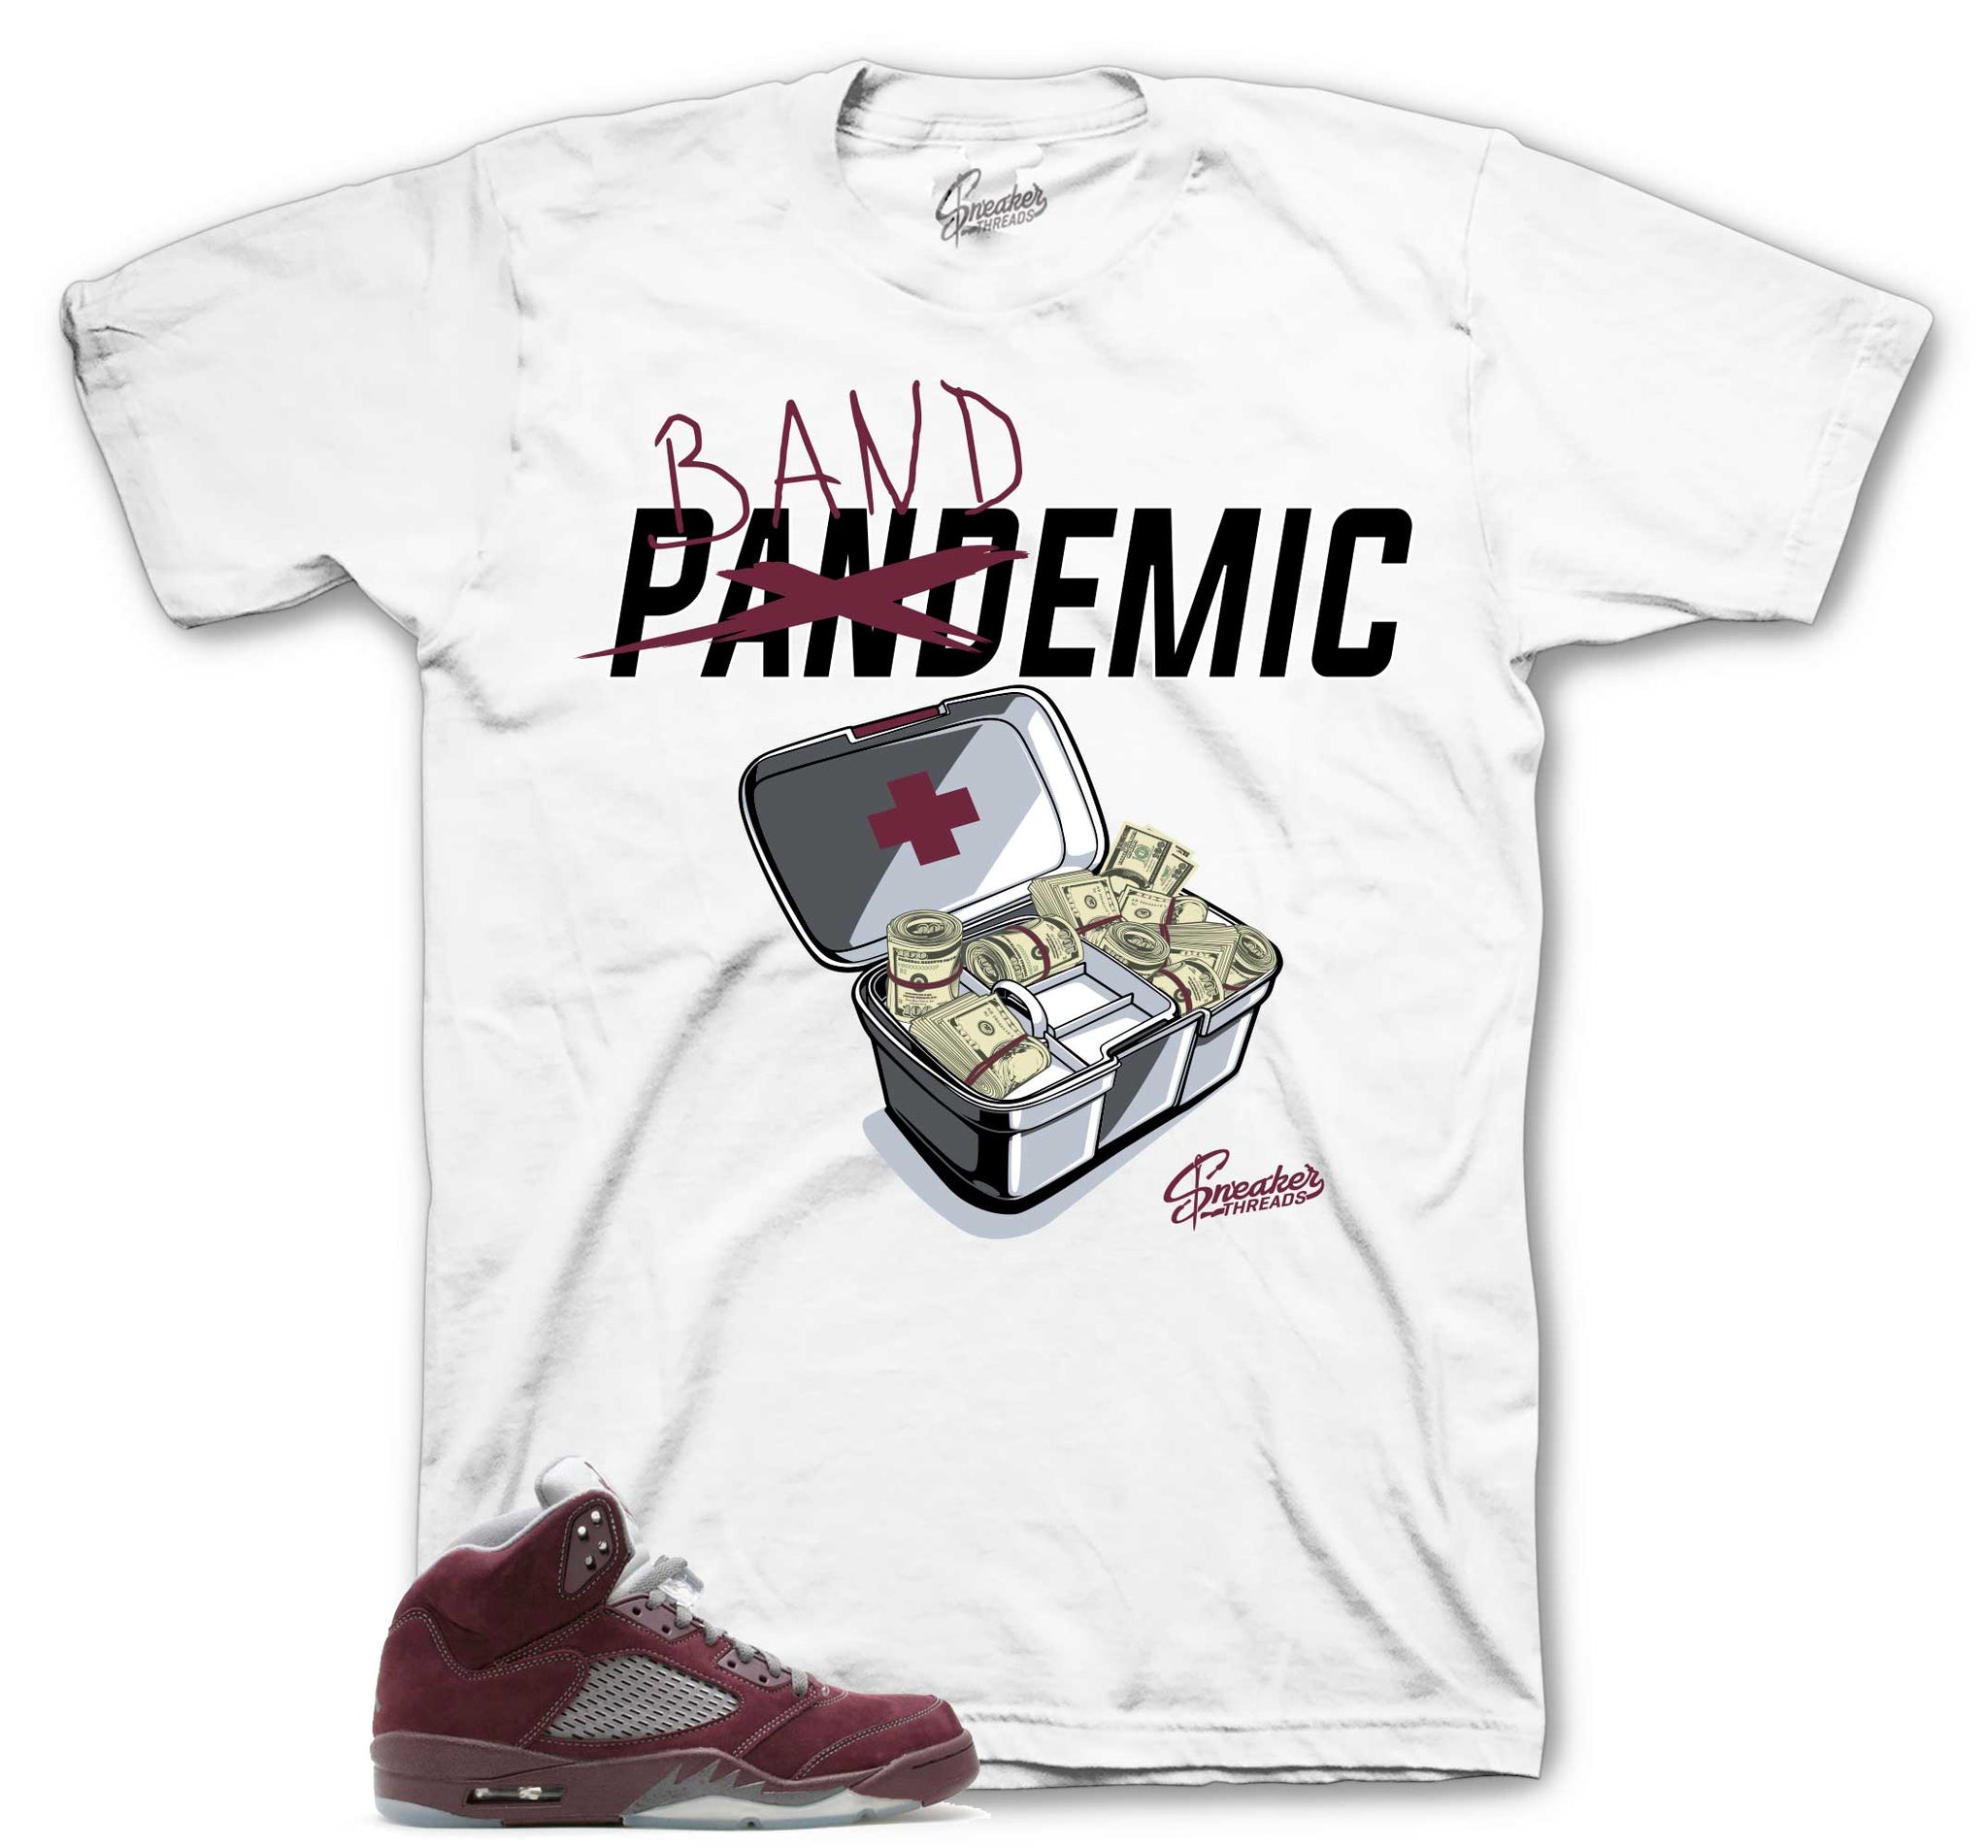 Bandemic T-Shirt - Retro 5 Burgundy Shirt